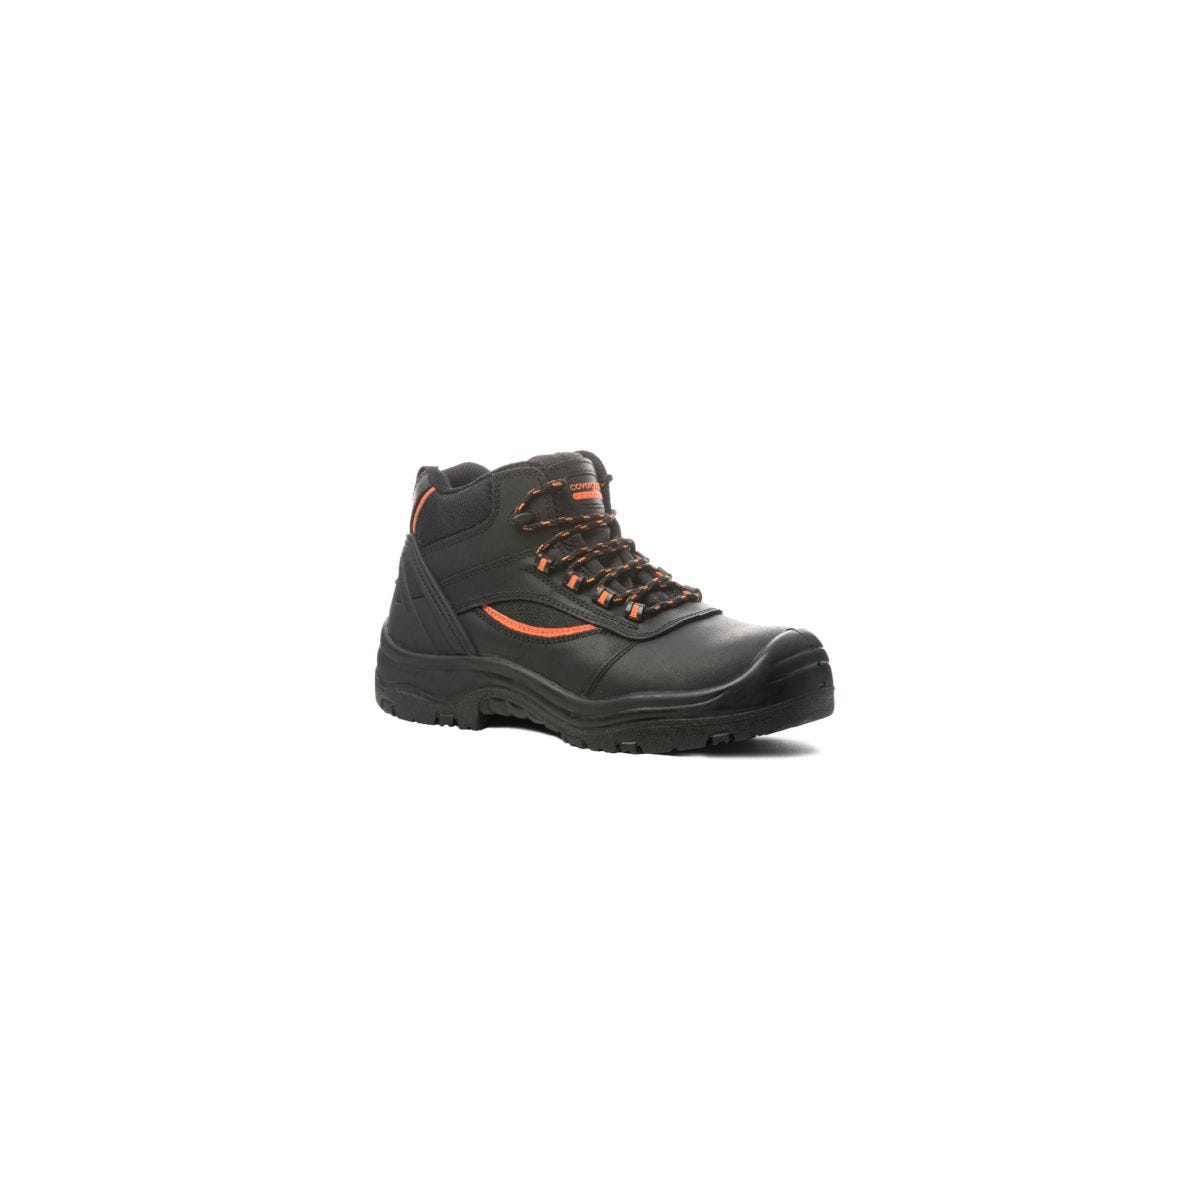 Chaussure de sécurité PEARL HIGH haute noire S3 SRC - COVERGUARD - Taille 41 0